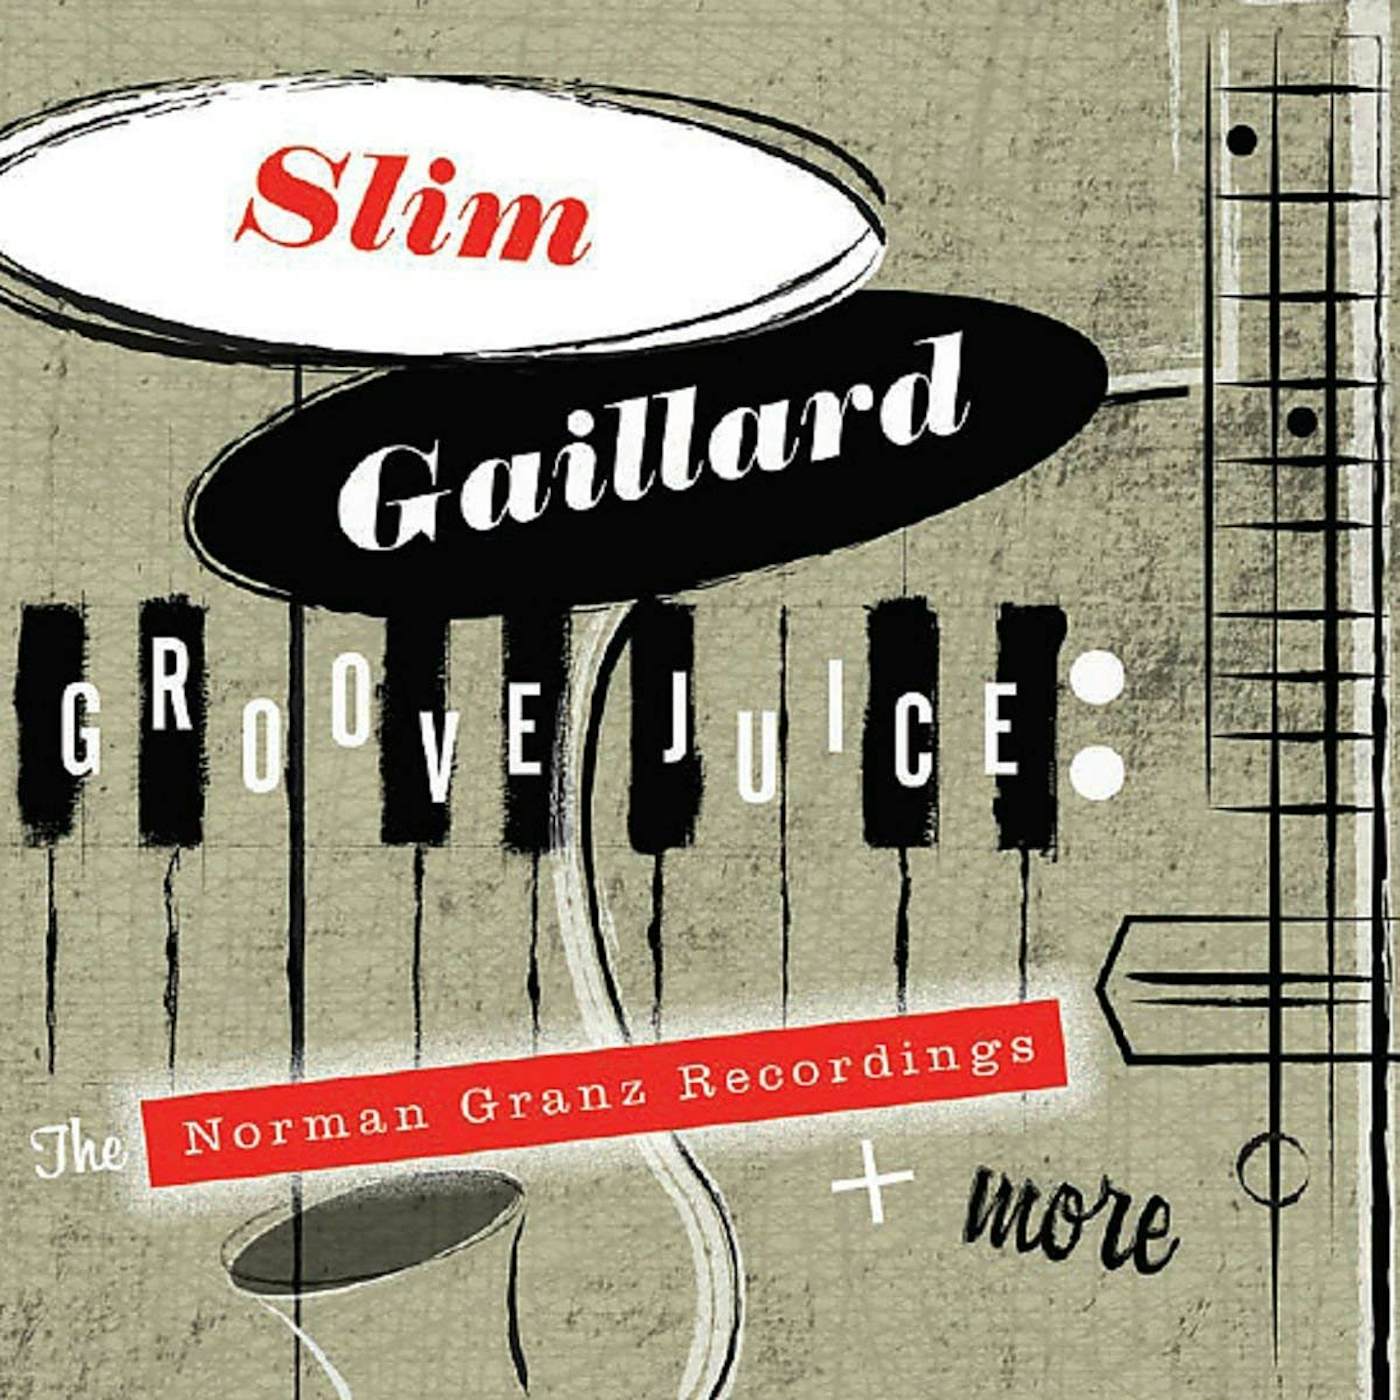 Slim Gaillard GROOVE JUICE: THE NORMAN GRANZ RECORDINGS + MORE (2 CD) CD